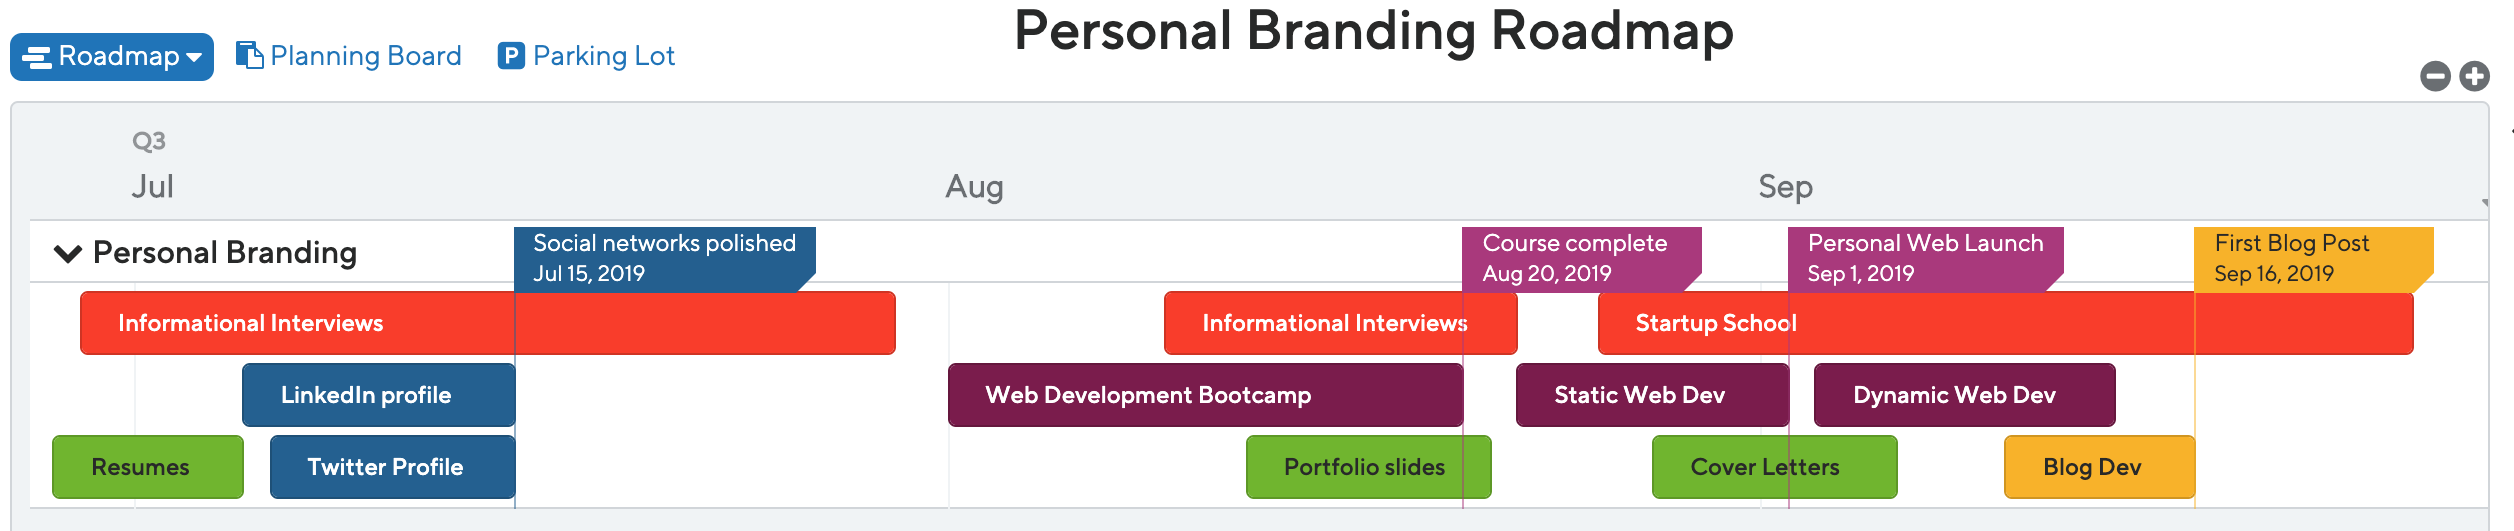 Personal Branding Roadmap